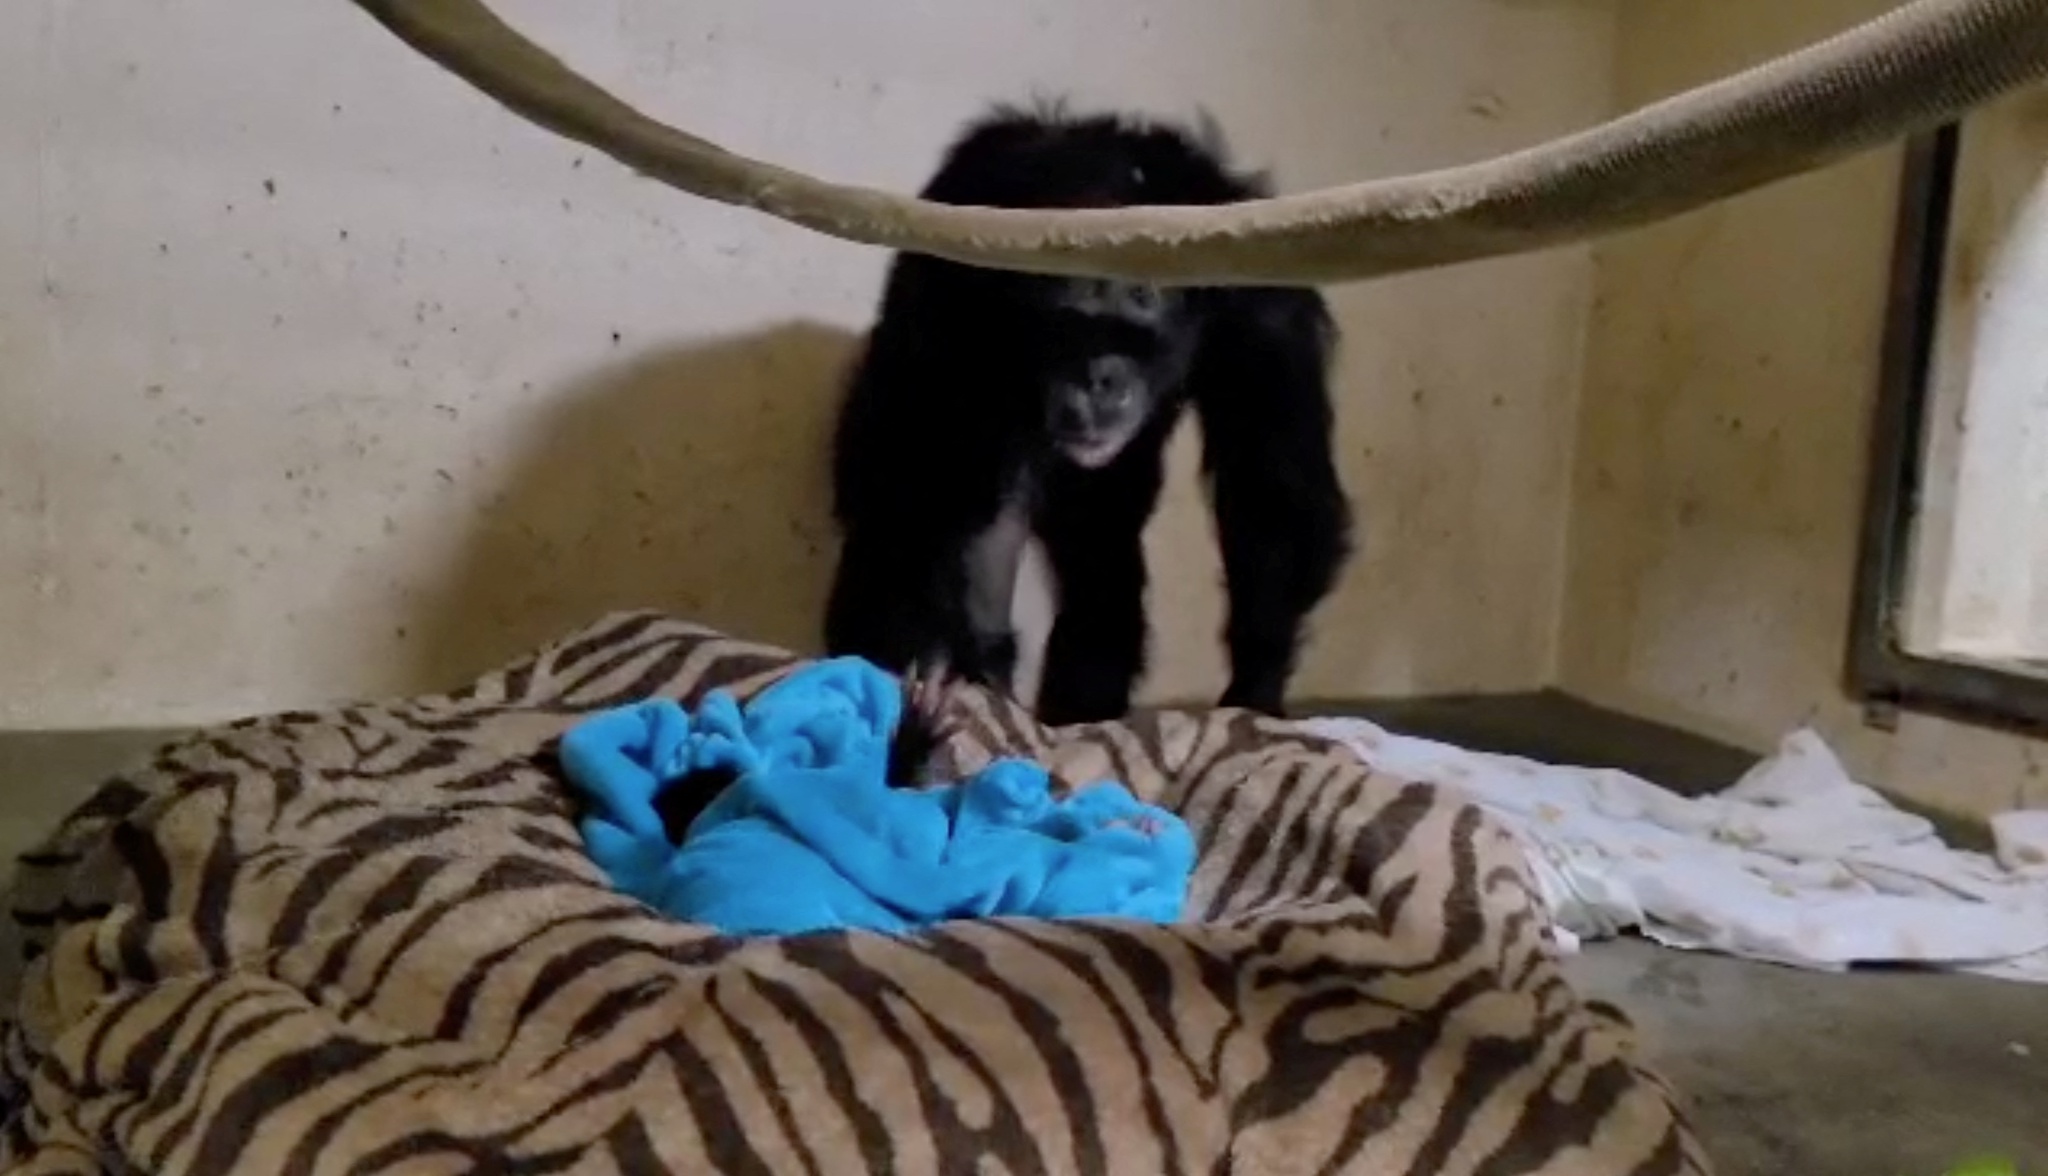 Filhote de chimpanzé dá risada pela primeira vez em vídeo; assista